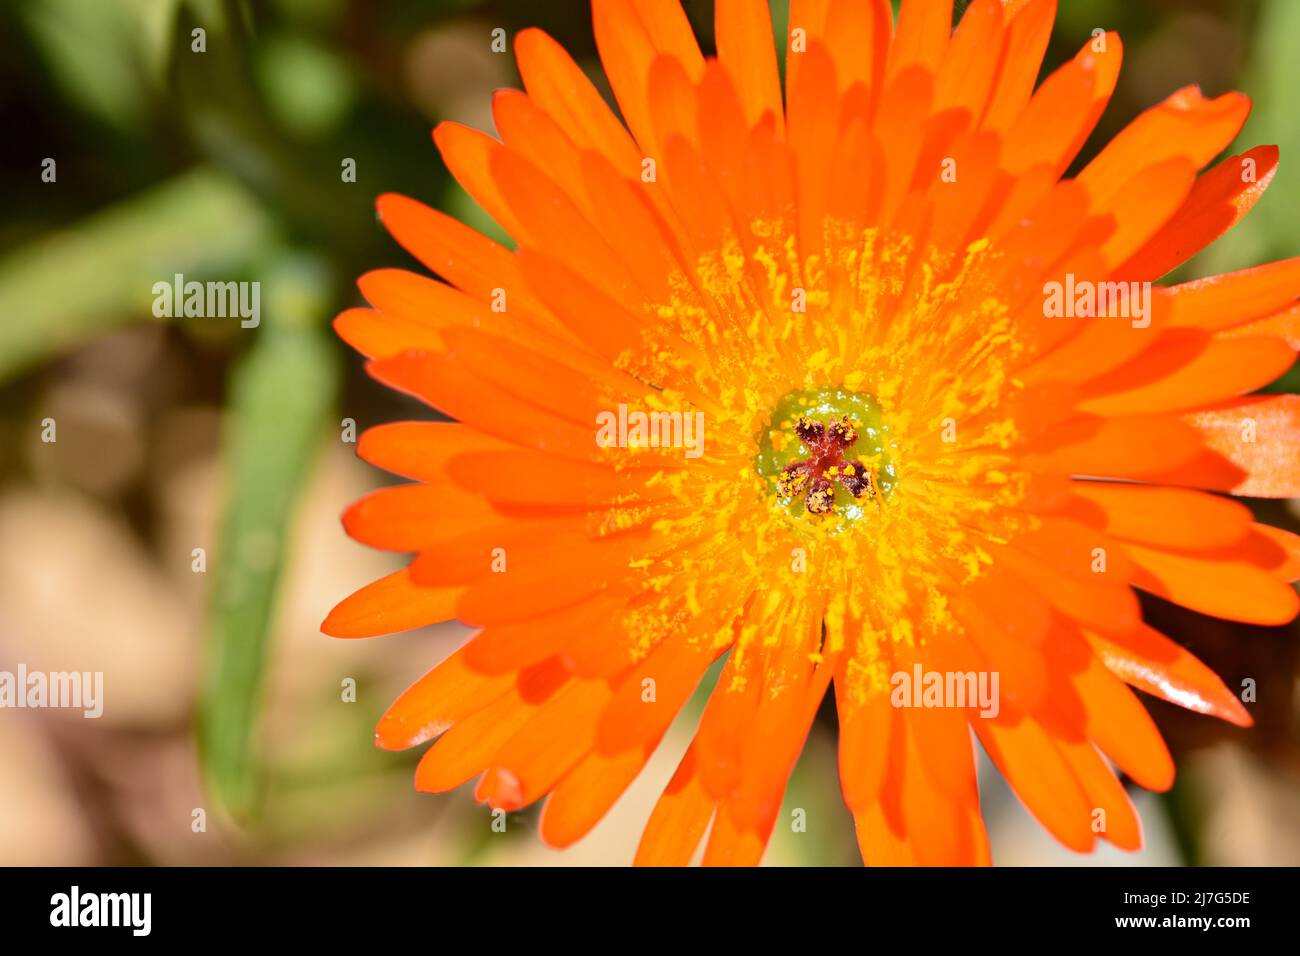 Detalle de una flor de lampranto naranja, Lampranthus aurantiacus, en un jardín en primavera Stock Photo